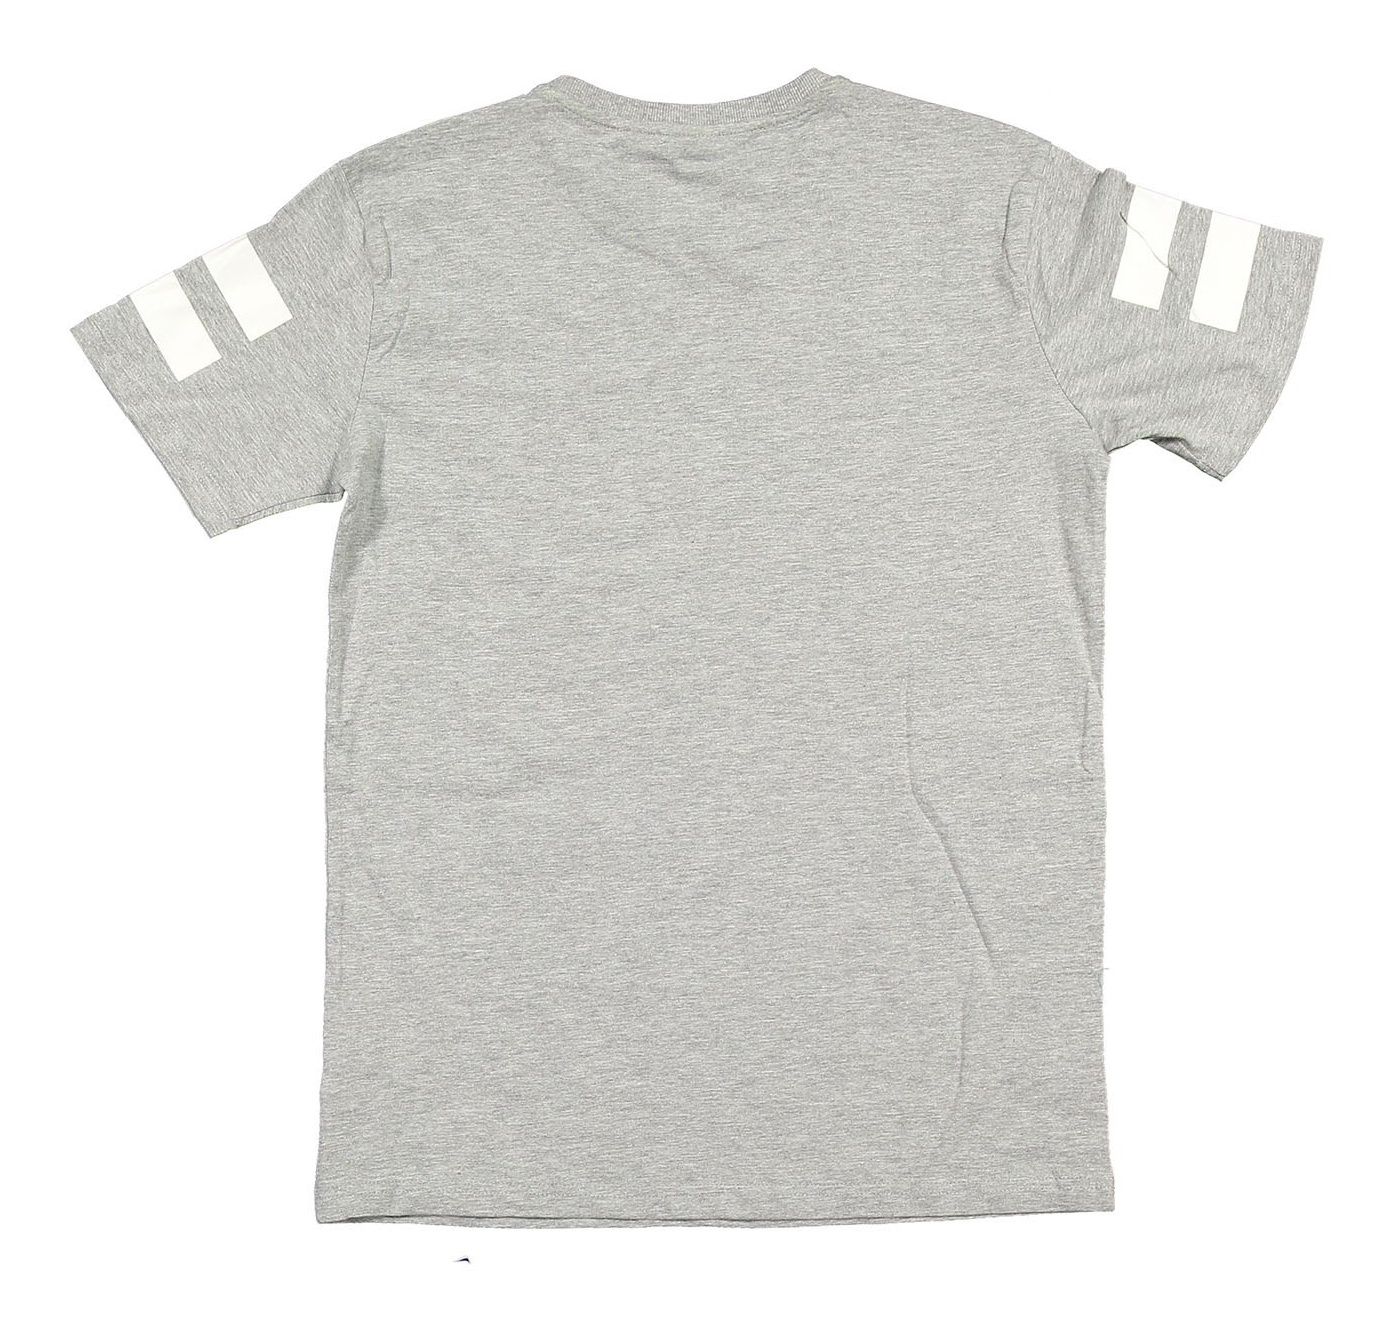 ست تاپ و تی شرت پسرانه بسته 3 عددی - بلوکیدز -  - 6